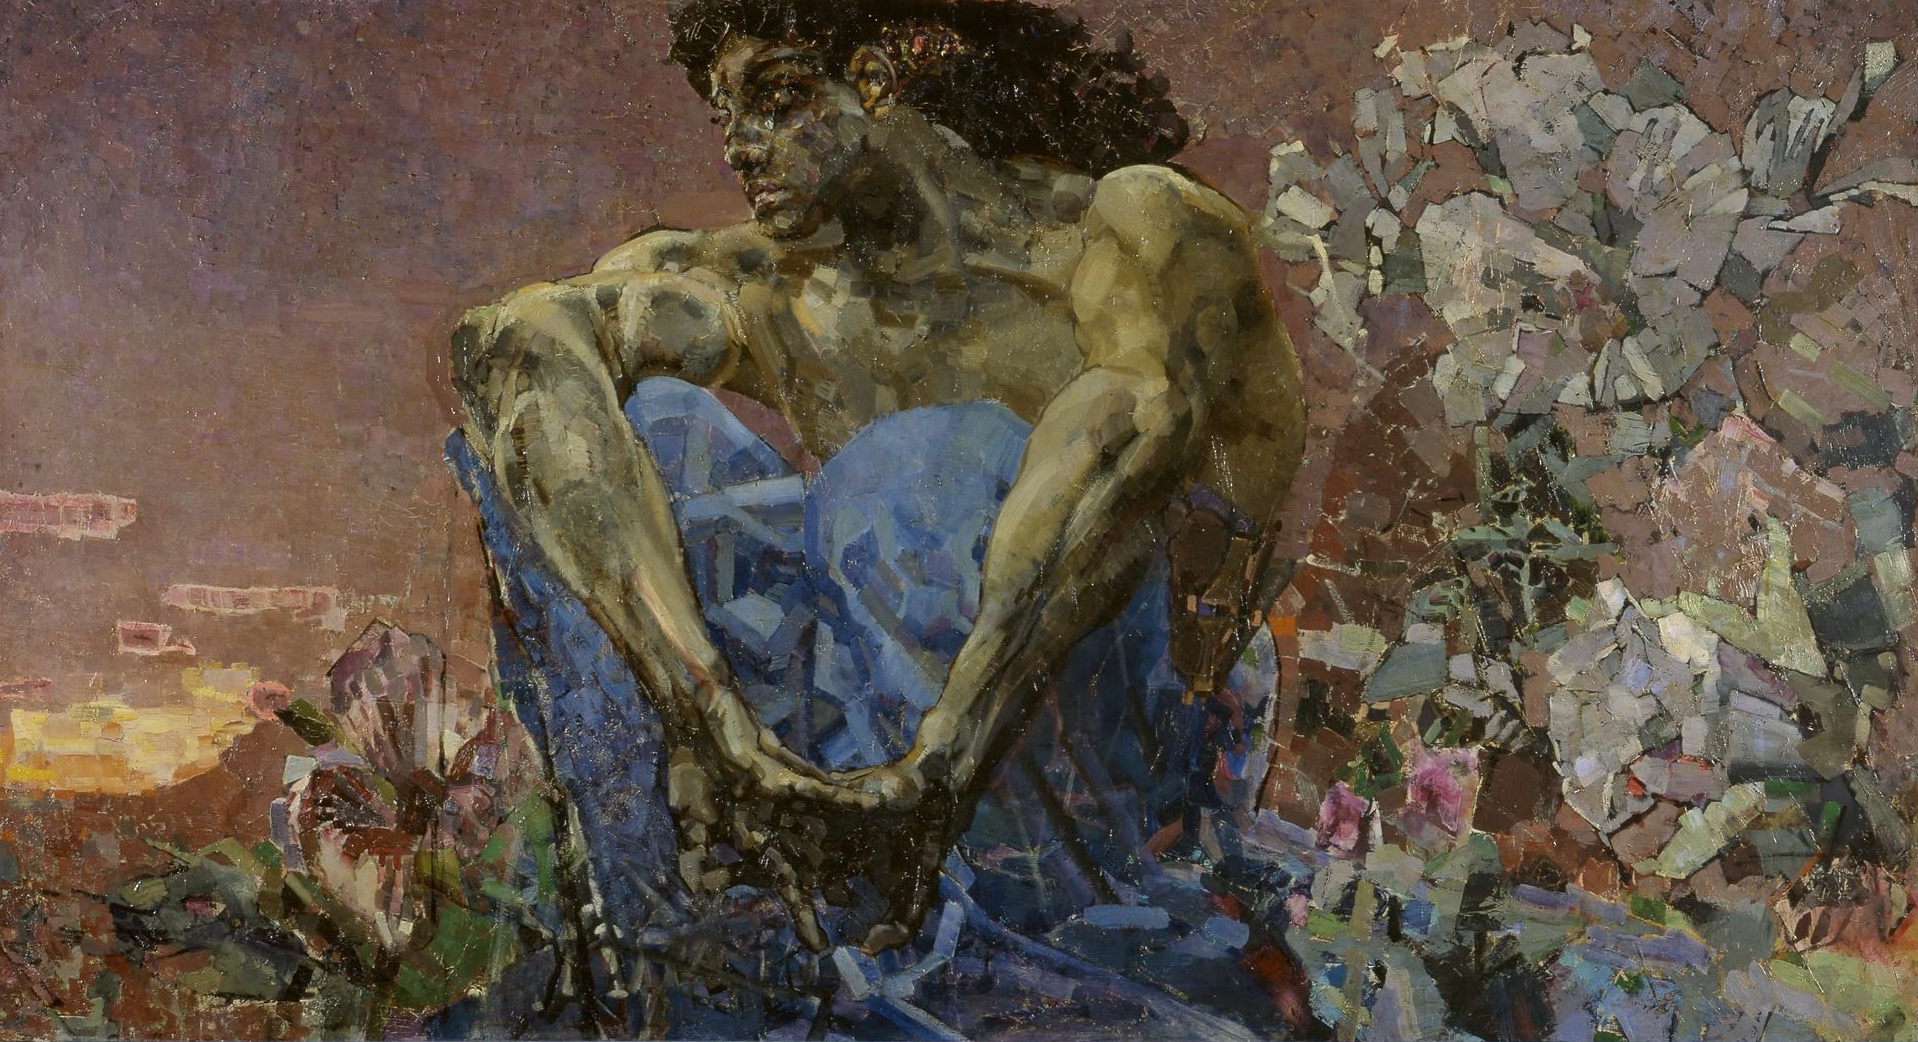 Un demone seduto in giardino by Mikhail Vrubel - 1890 - 114 x 211 cm 